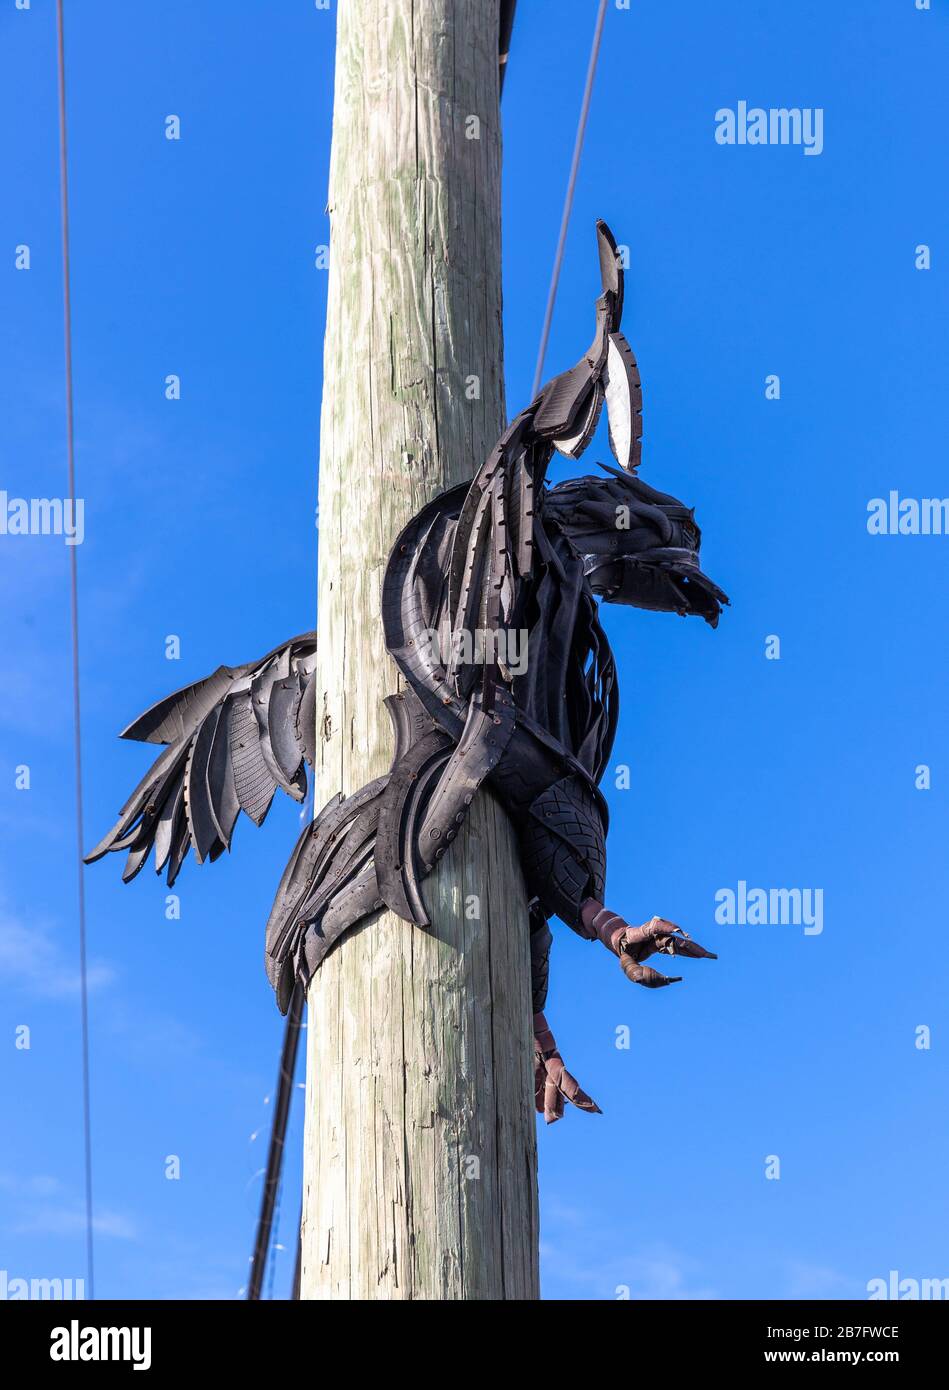 Una escultura de águila, hecha de piezas de goma, fijada en un poste de madera, Wynwood Art District, Miami, Florida, EE.UU. Foto de stock